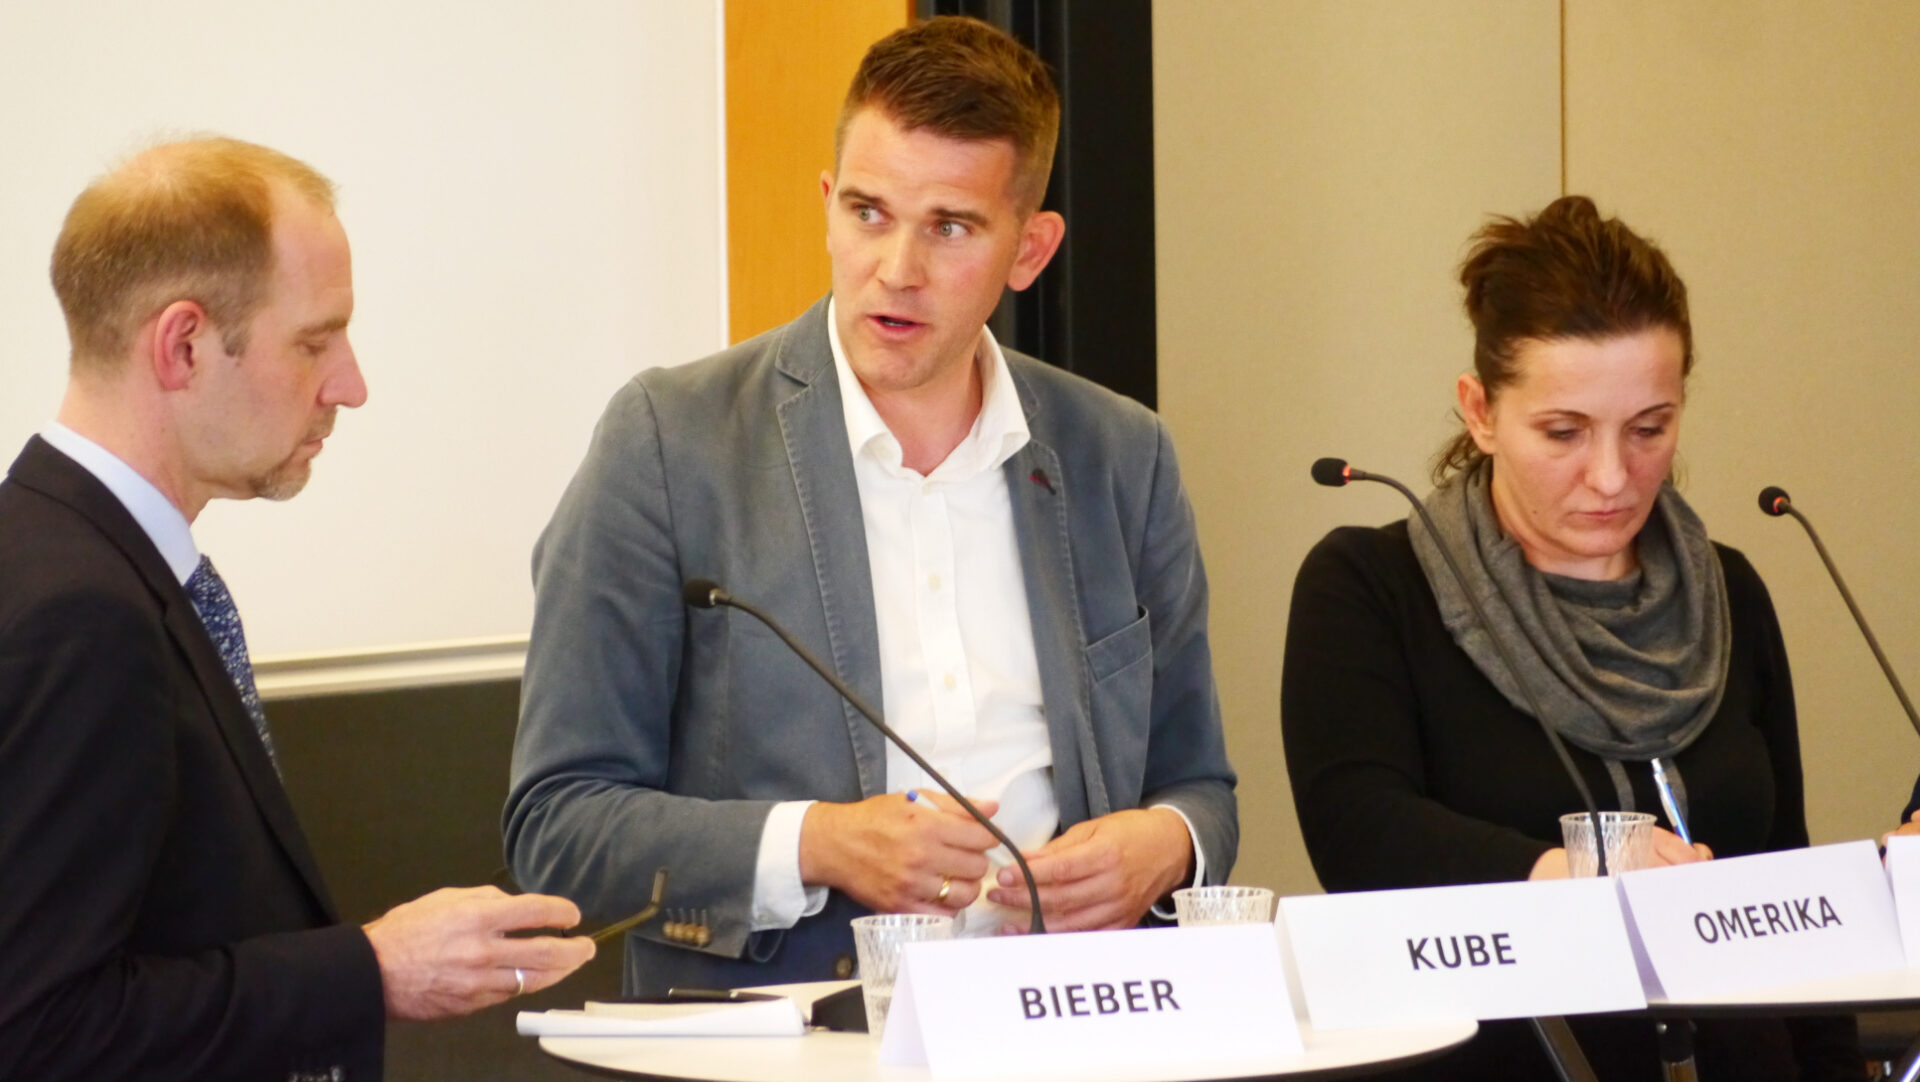 Florian Bieber, Stefan Kube und Armina Omerika diskutieren über die Rolle von Religionsgemeinschaften auf dem Balkan.